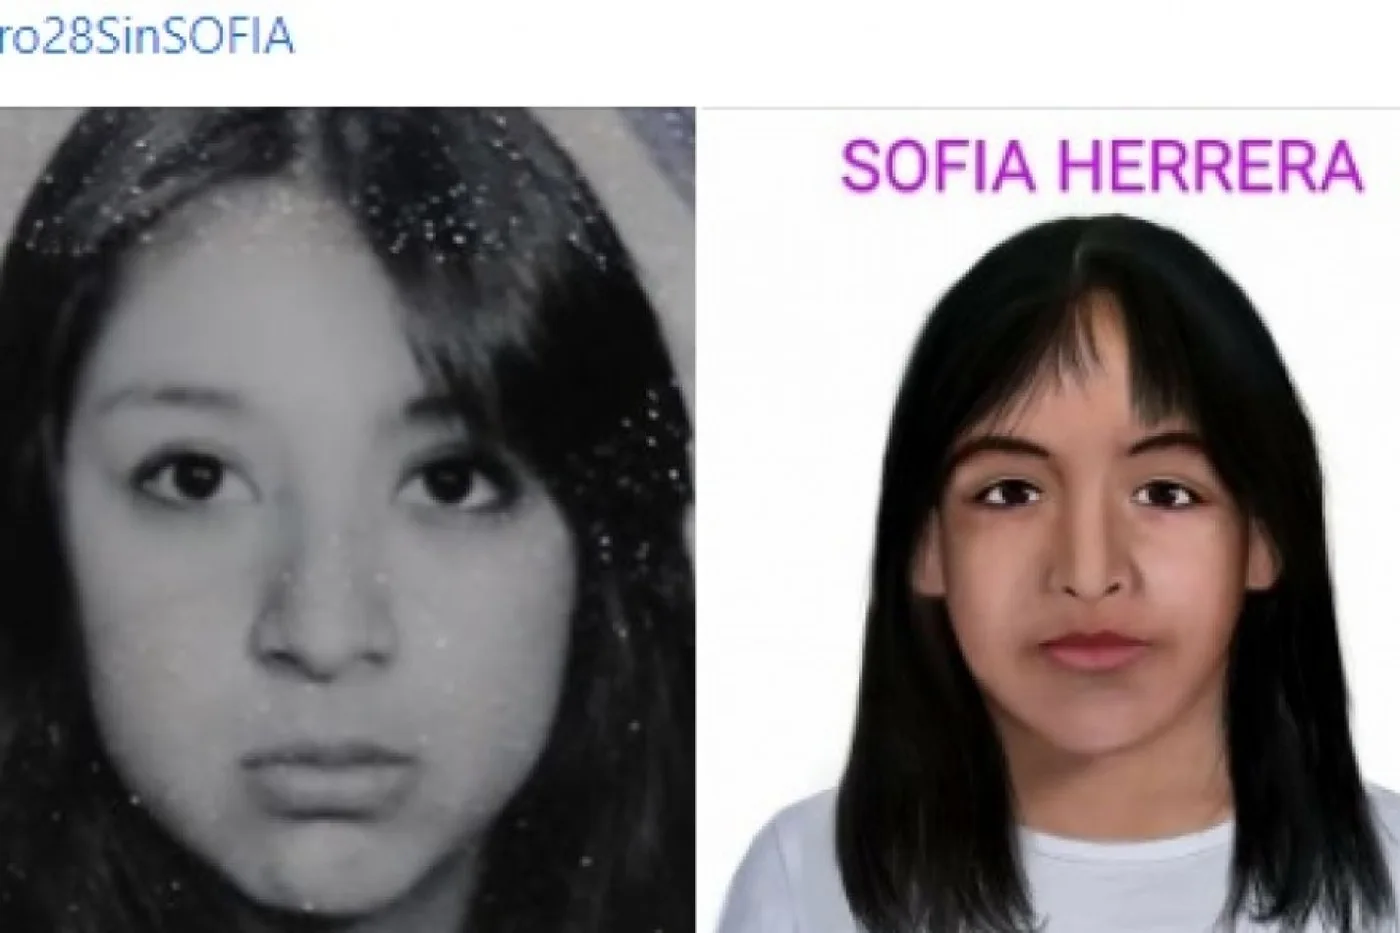 La foto de María Elena Delgado cuando tenía 16 años junto a la proyección de su hija. El parecido sorprende.